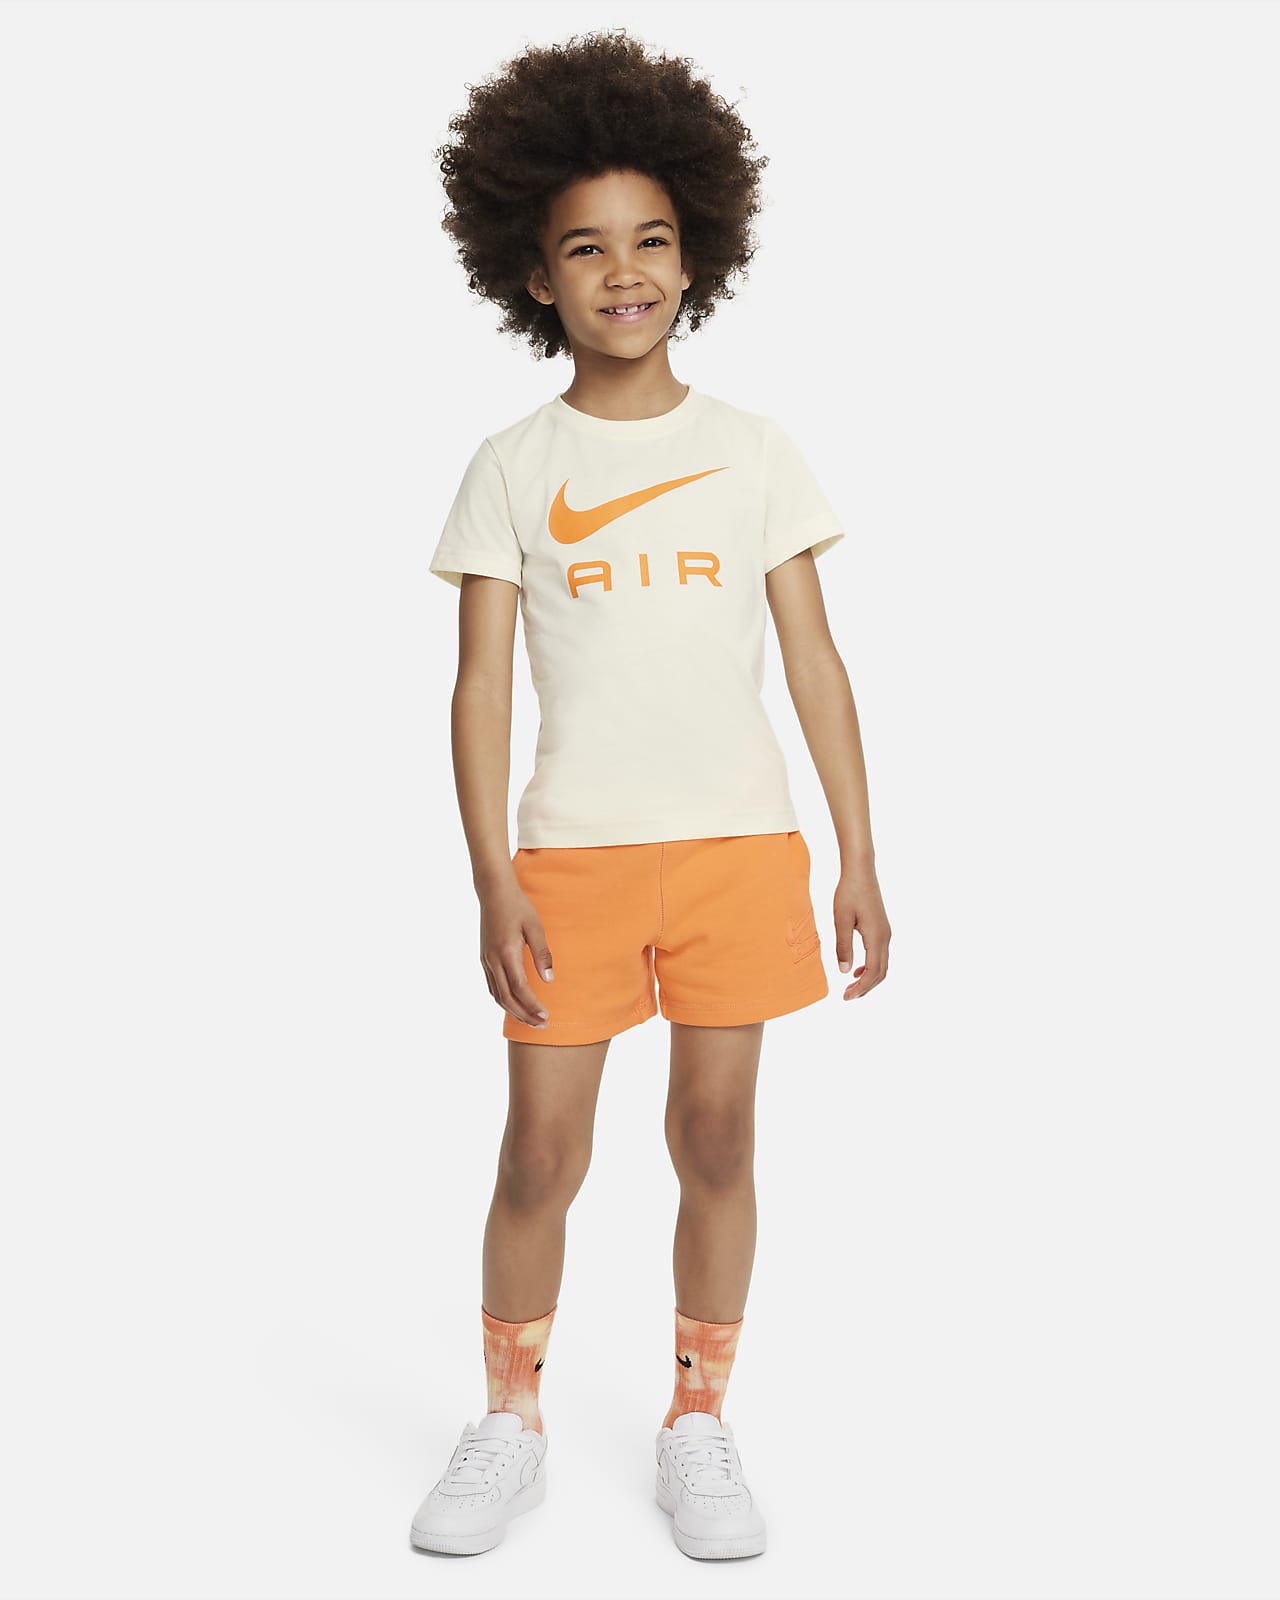 Dental Kommentér ejer Nike Sportswear Air-shortssæt mindre børn. Nike DK